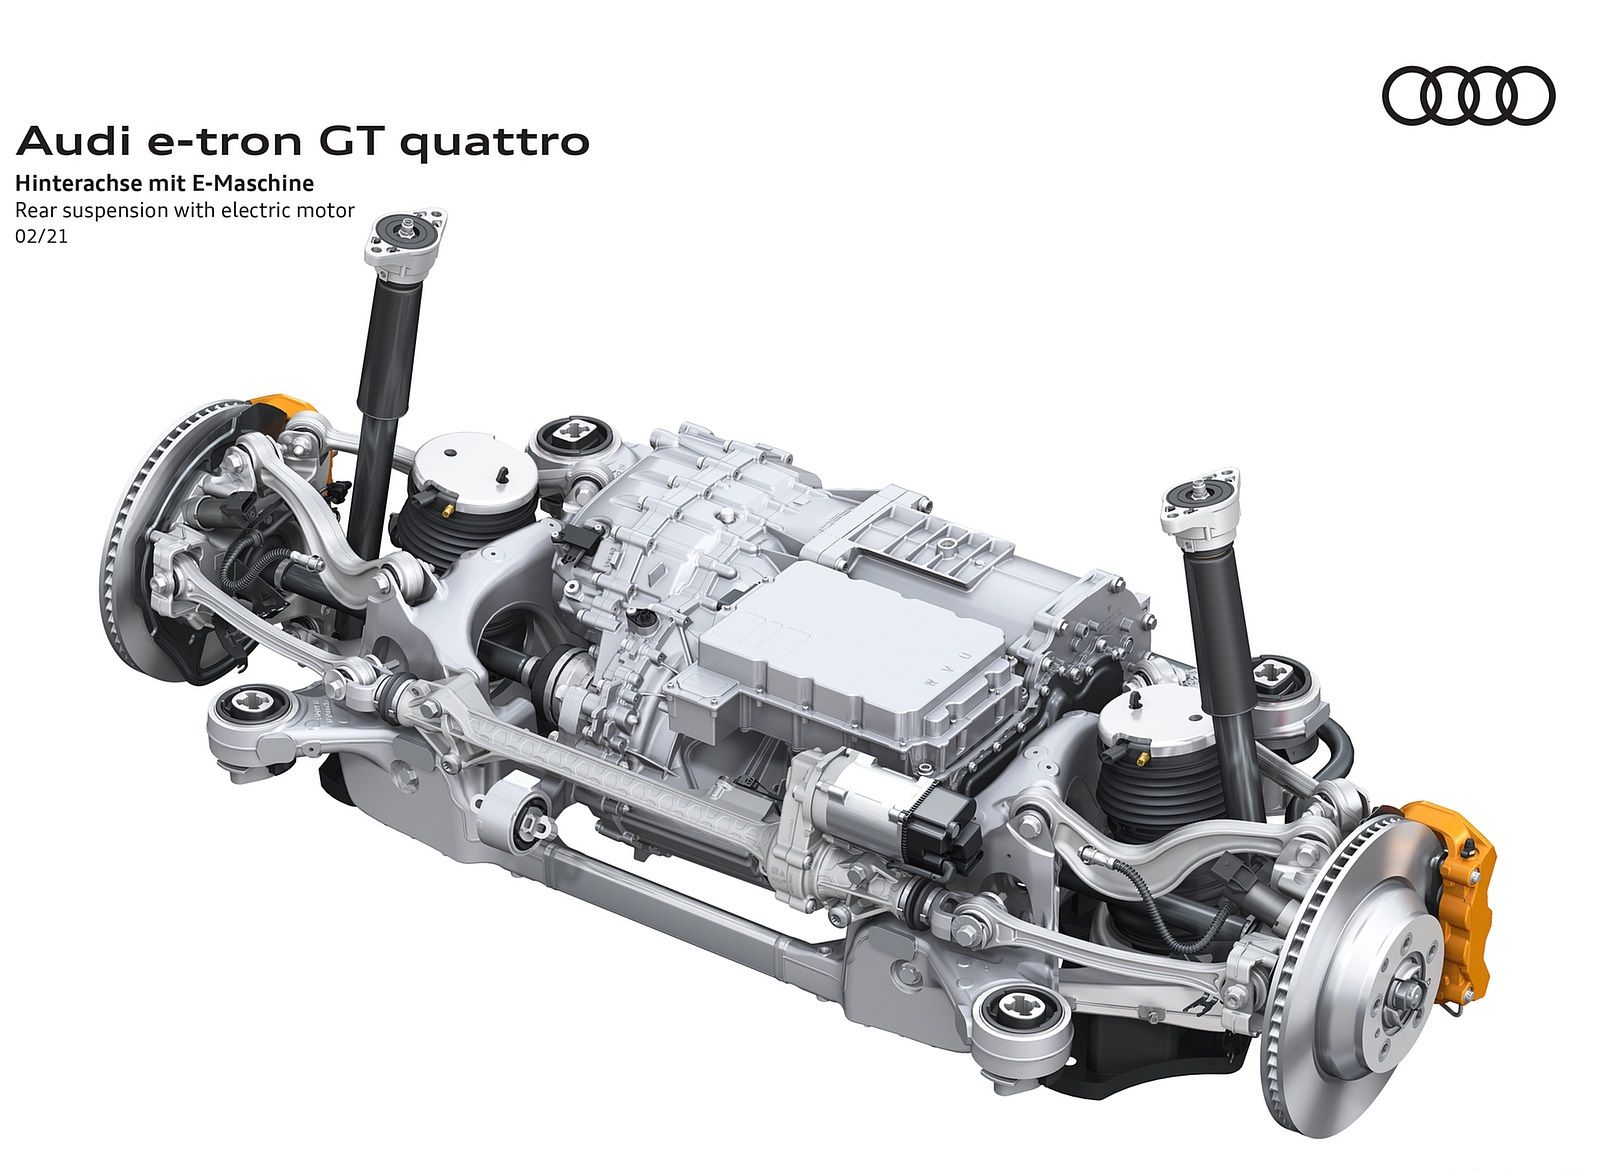 2022 Audi E Tron GT Quattro Rear Suspension With Electric Motor Wallpaper (103)